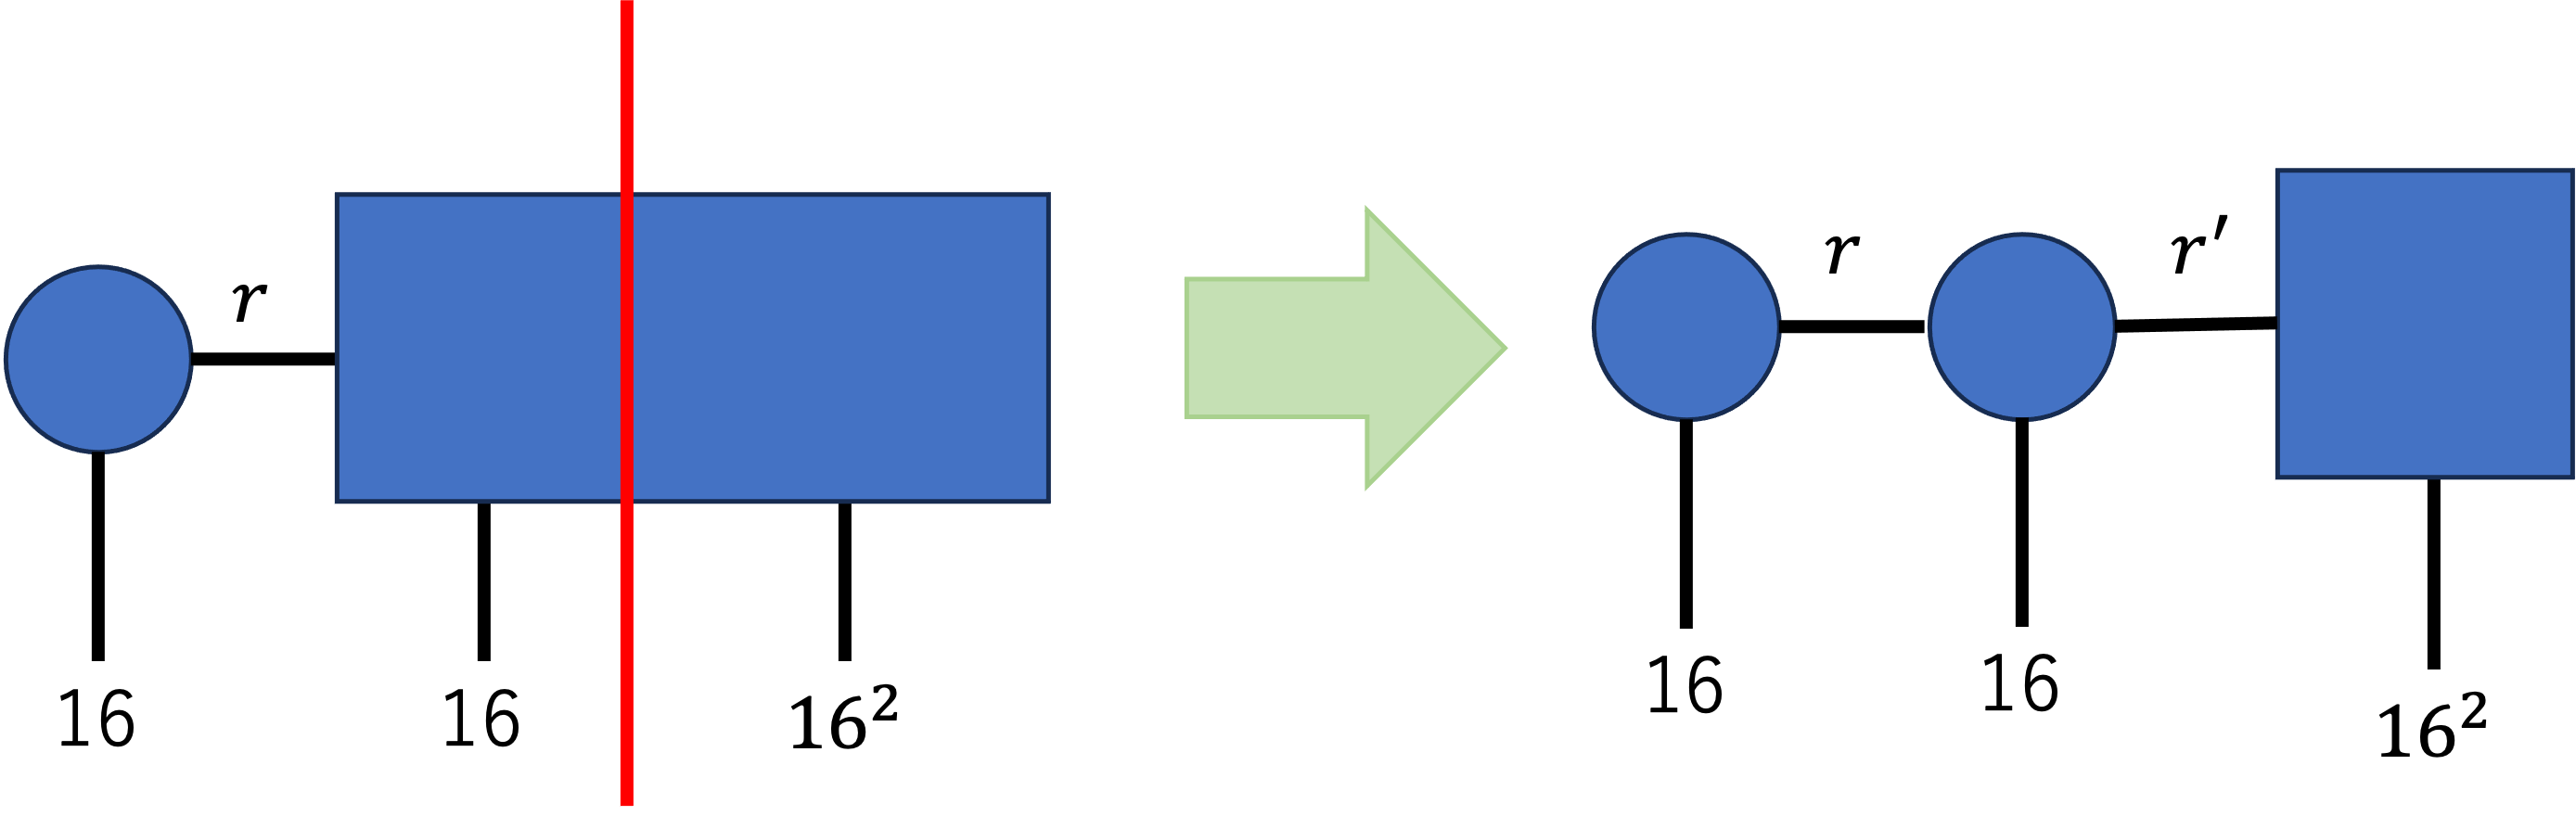 行列積状態への変換のイメージ図_3